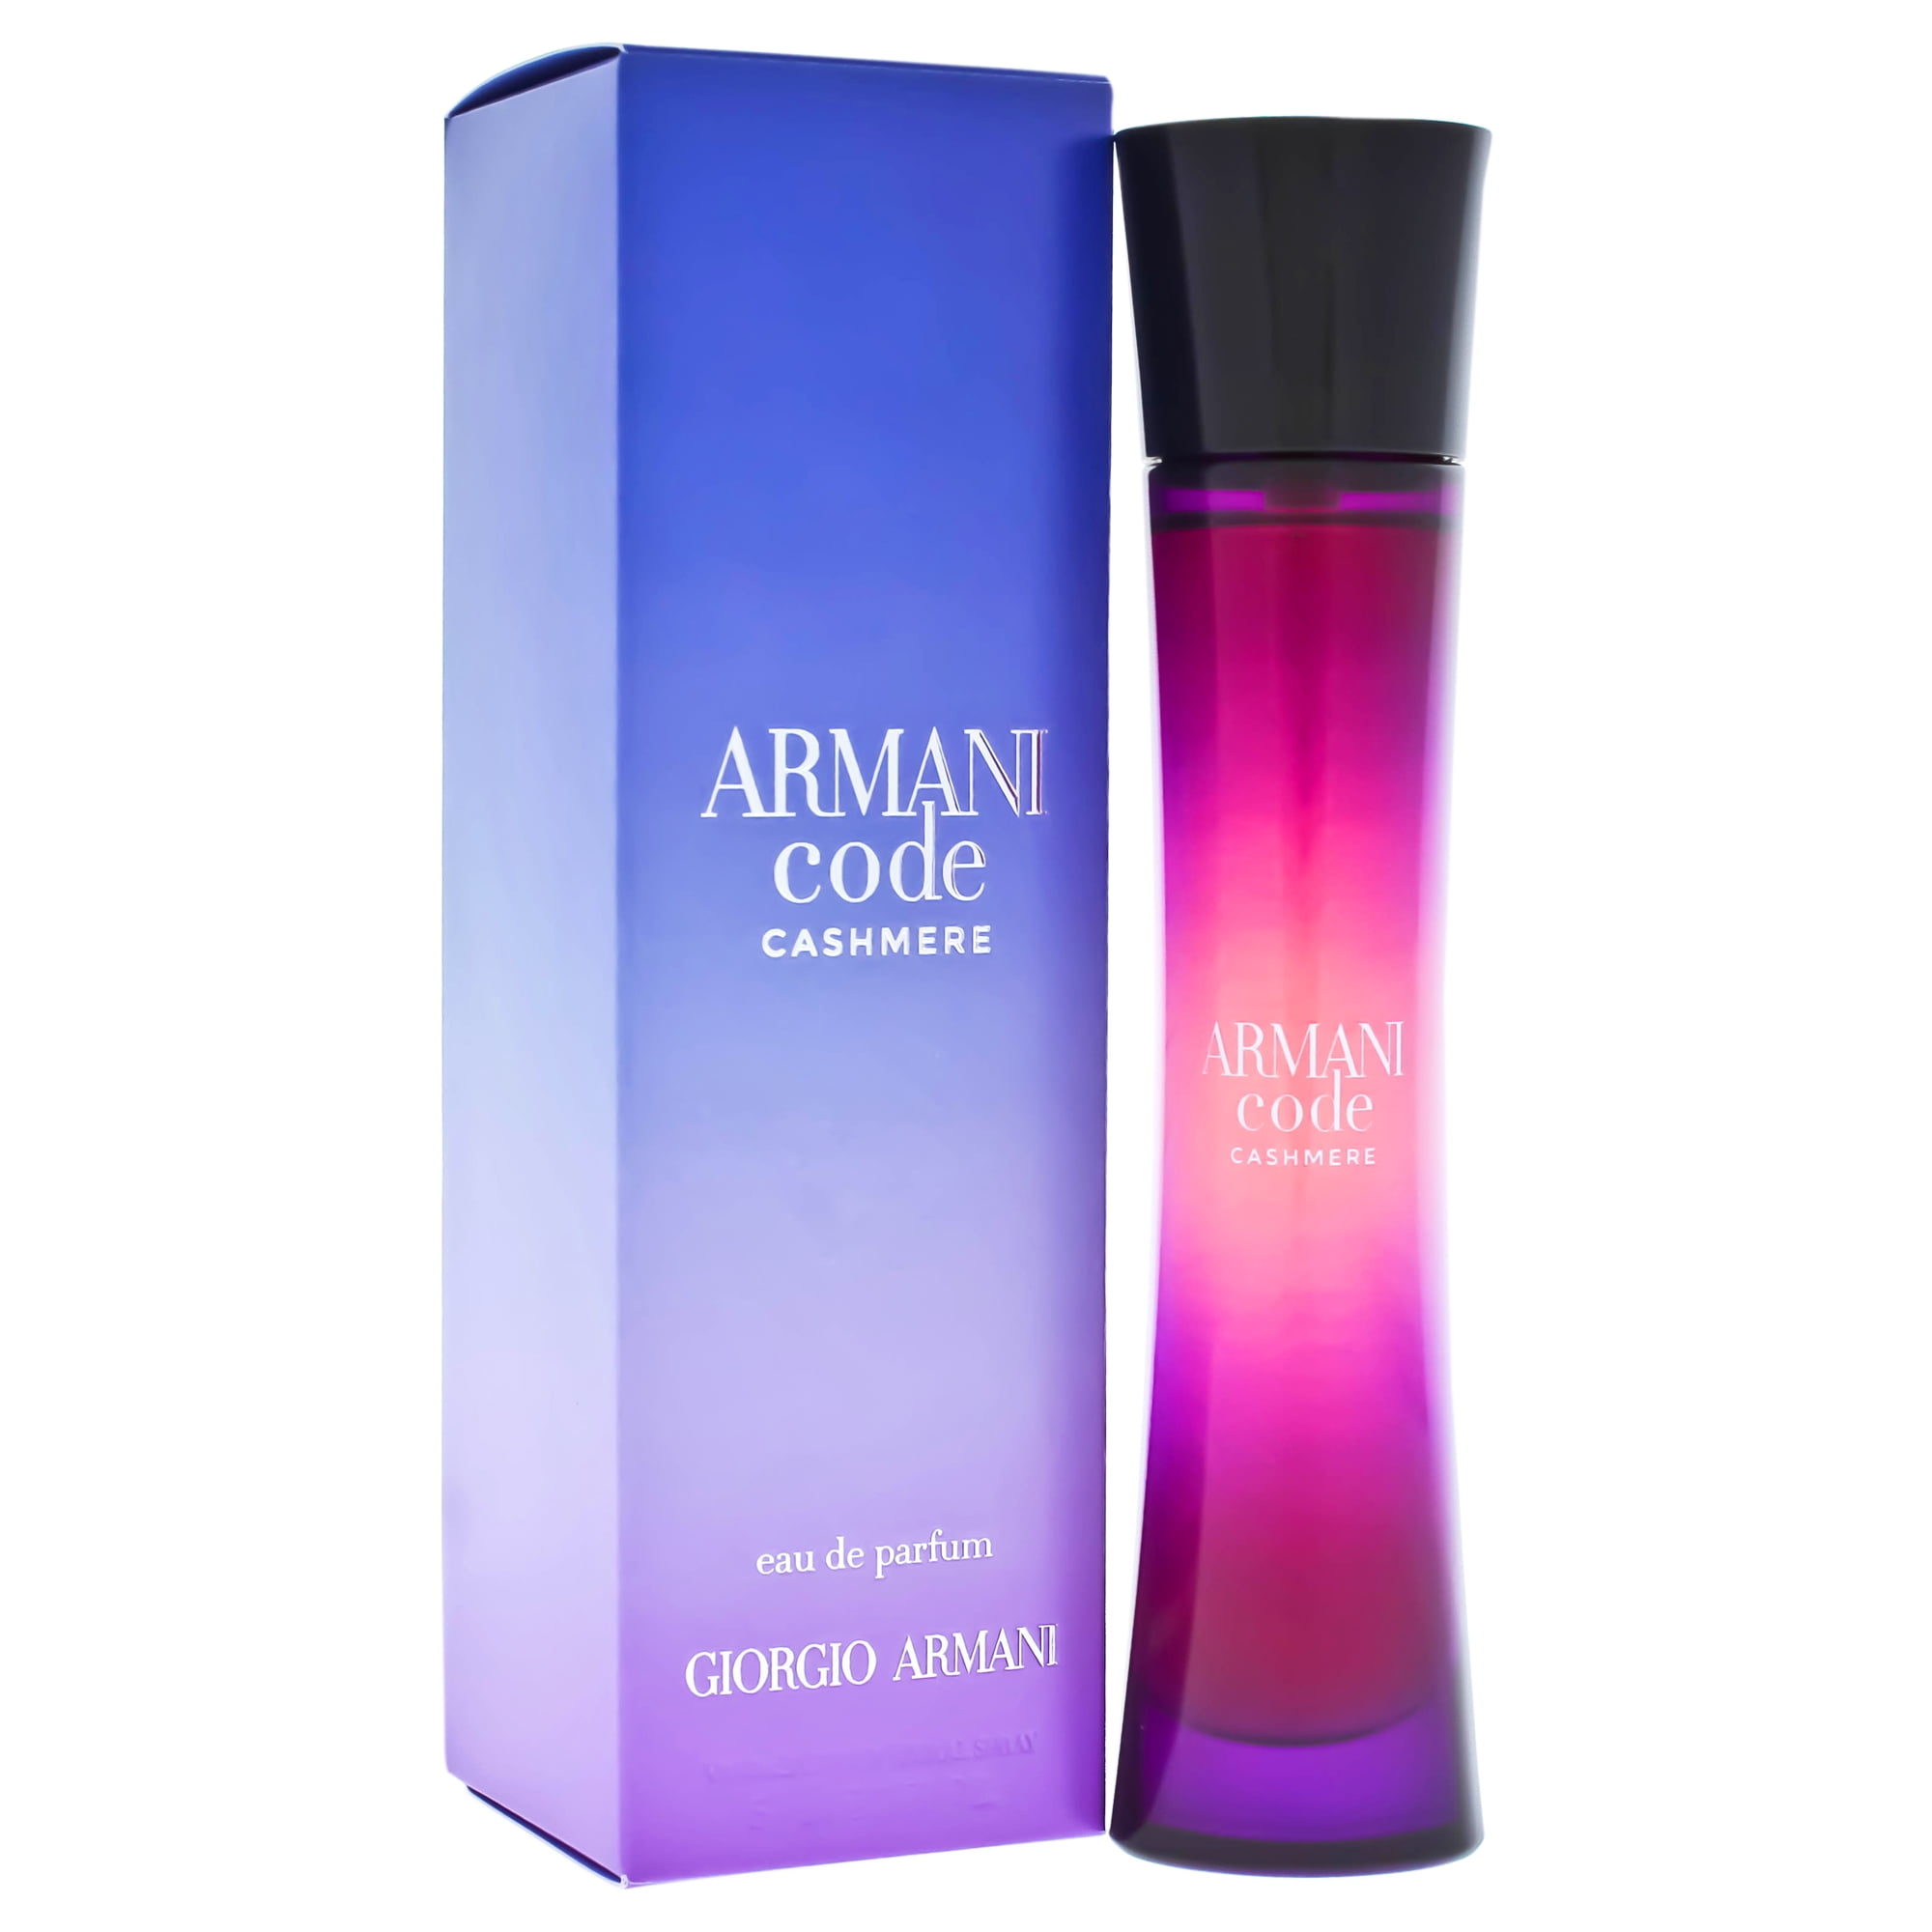 Giorgio Armani - Giorgio Armani Armani Code Cashmere Eau de Parfum